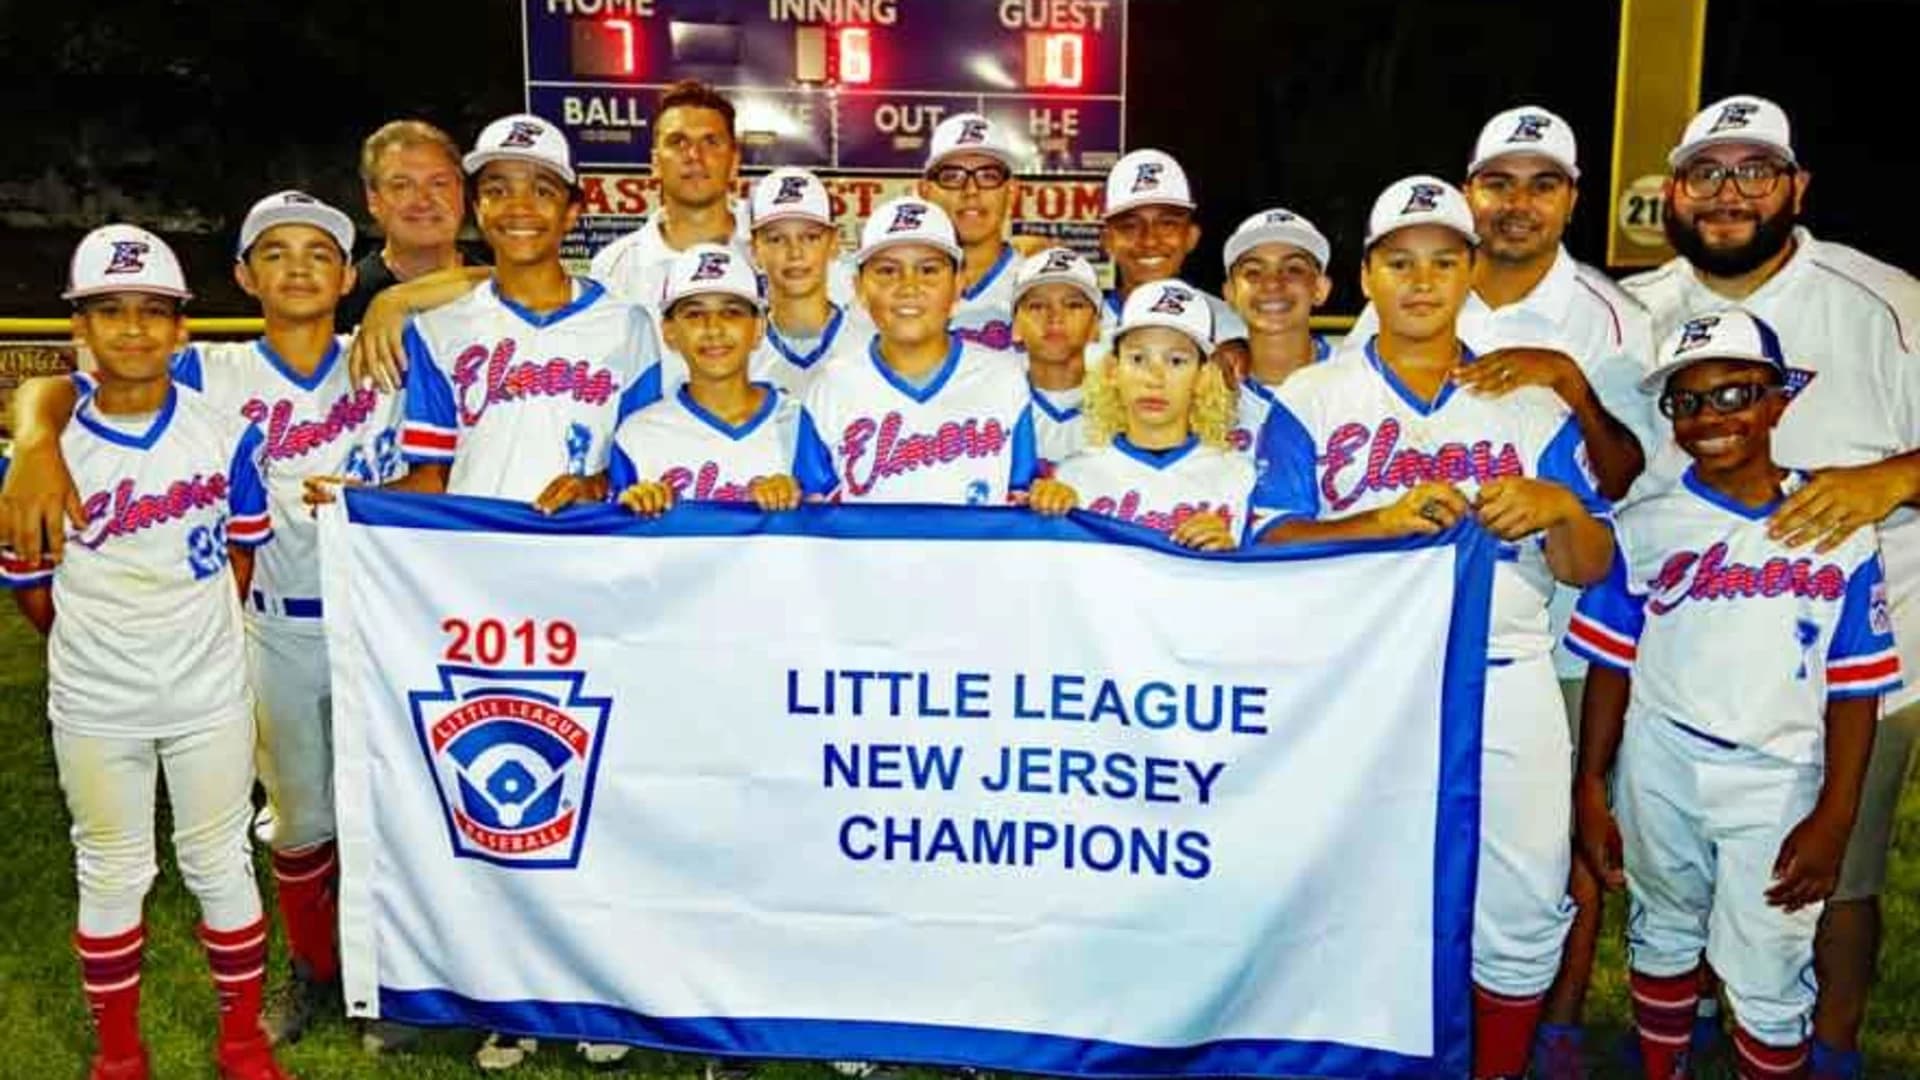 PHOTOS: Elizabeth Little League team wins state championship